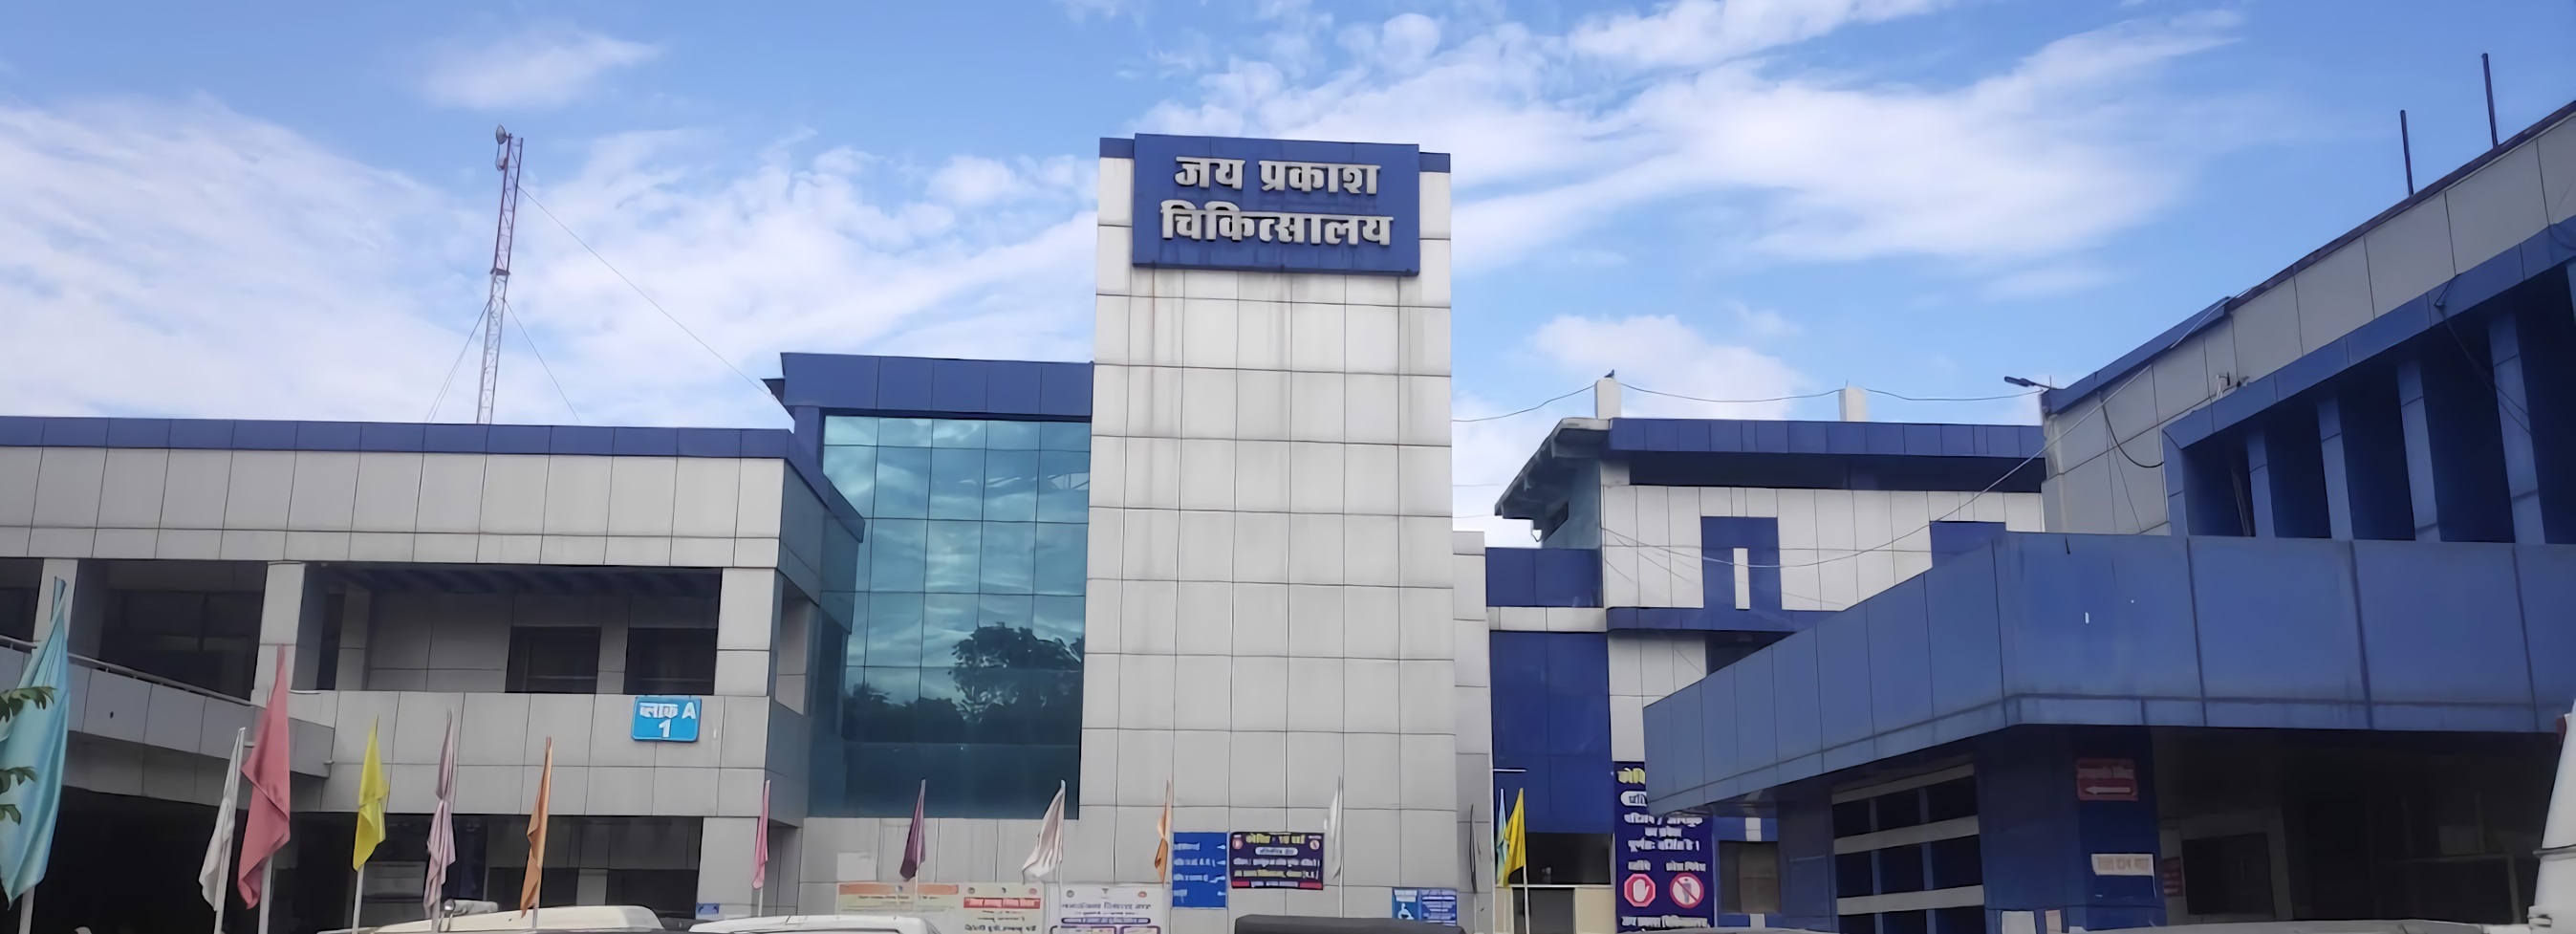 Government Jai Prakash District Hospital Bhopal Shivaji Nagar